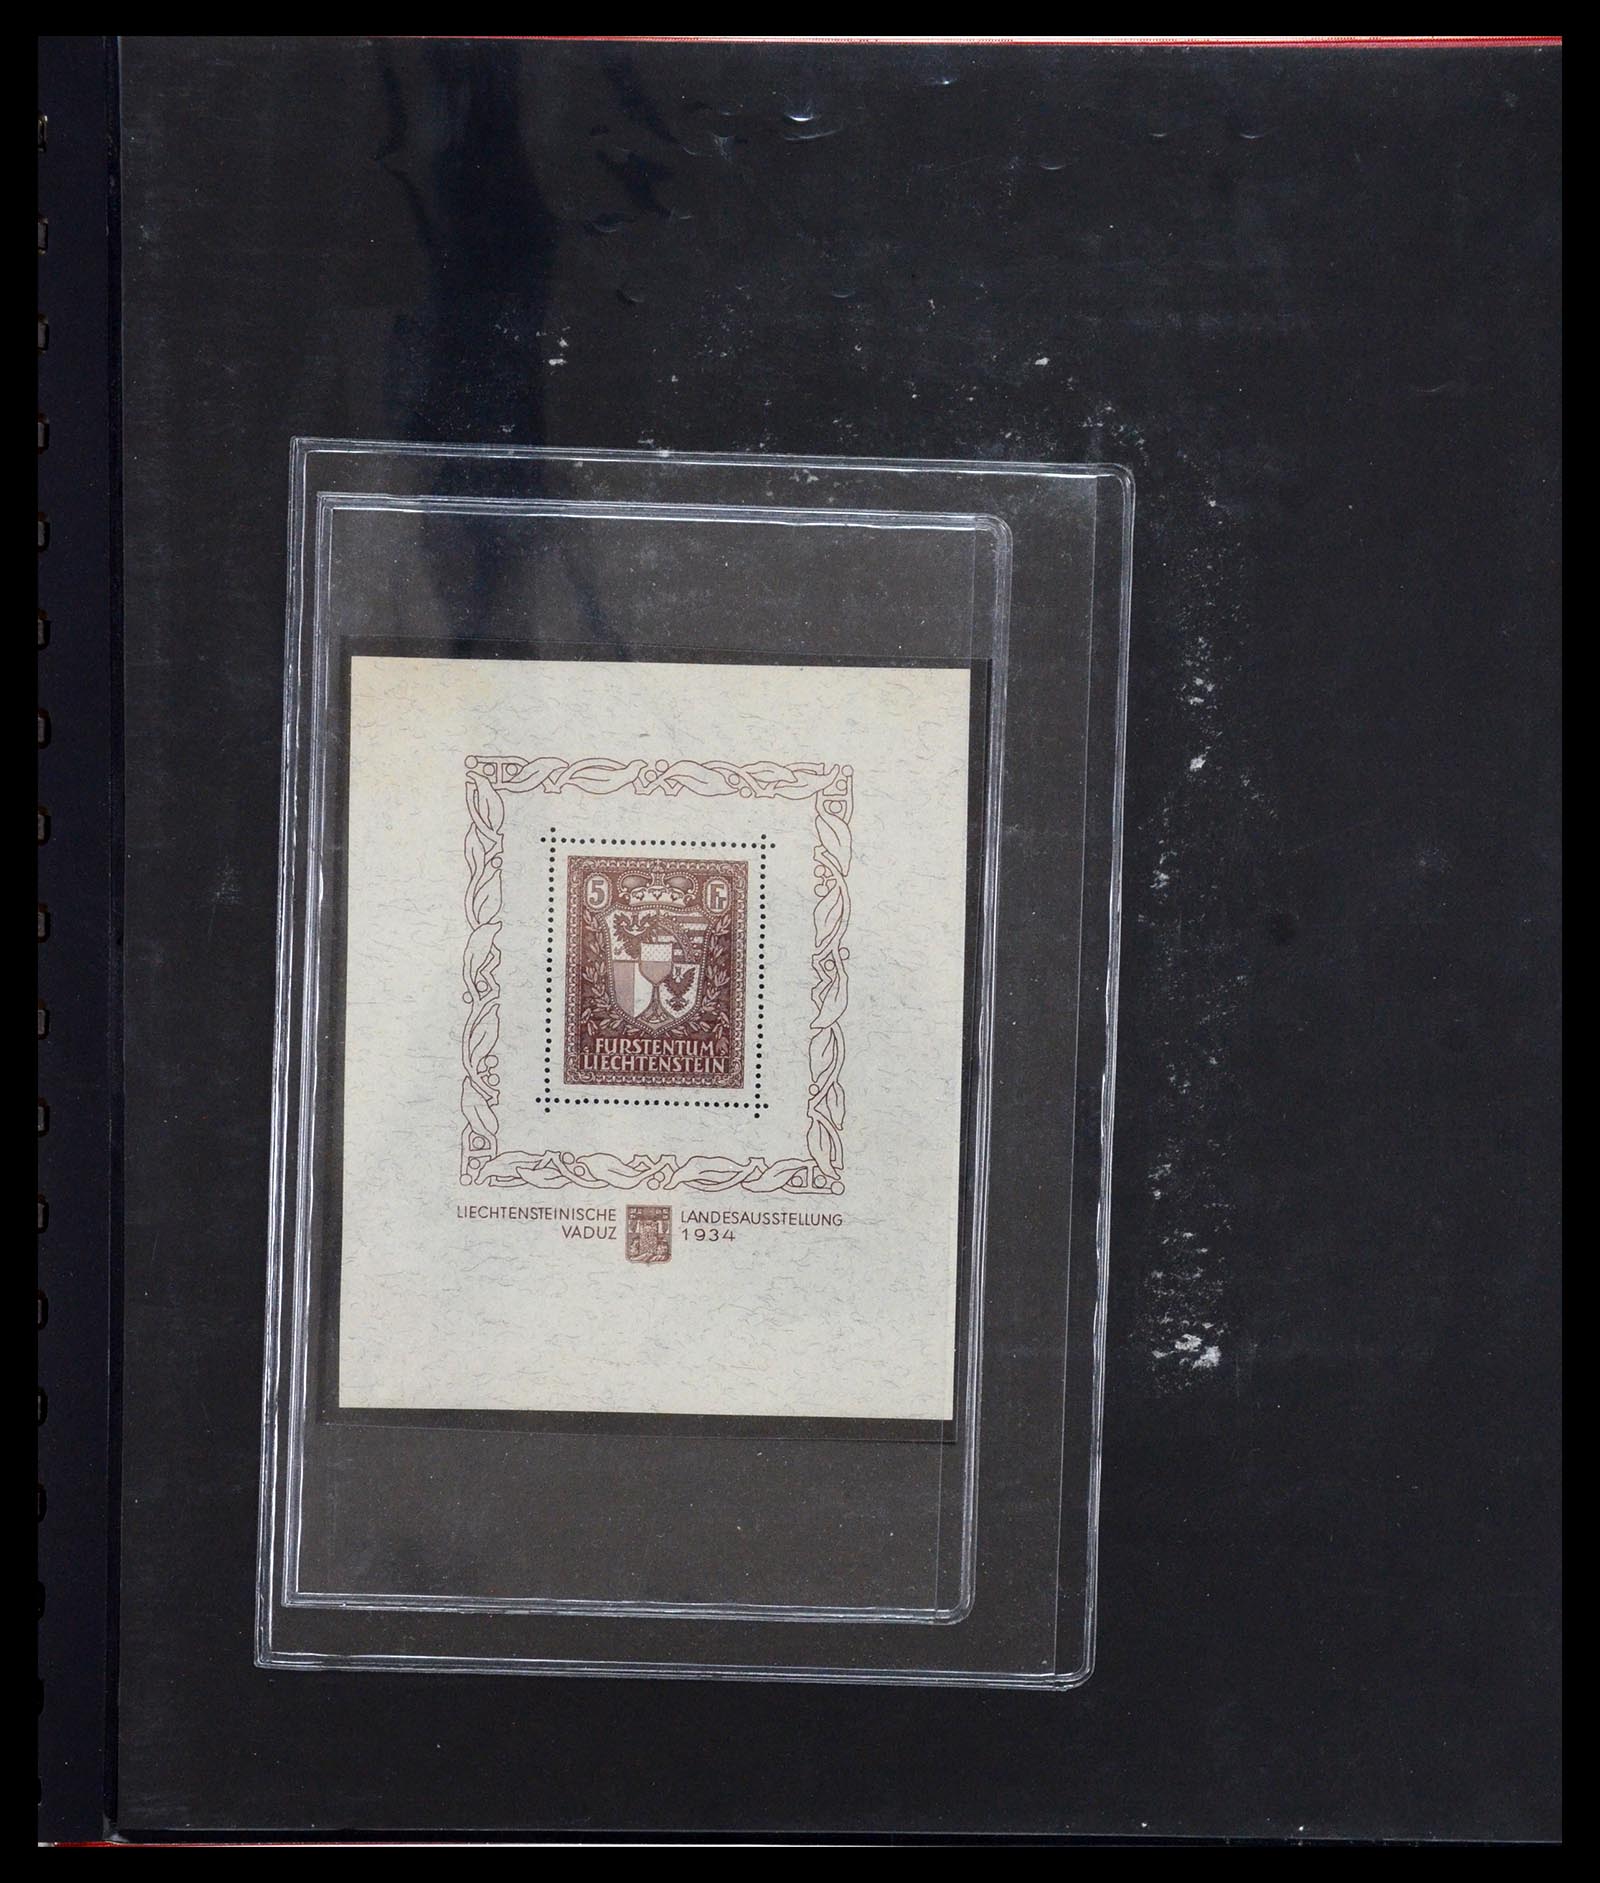 36280 047 - Stamp collection 36280 Liechtenstein souvenir sheets and sheetlets 1934-